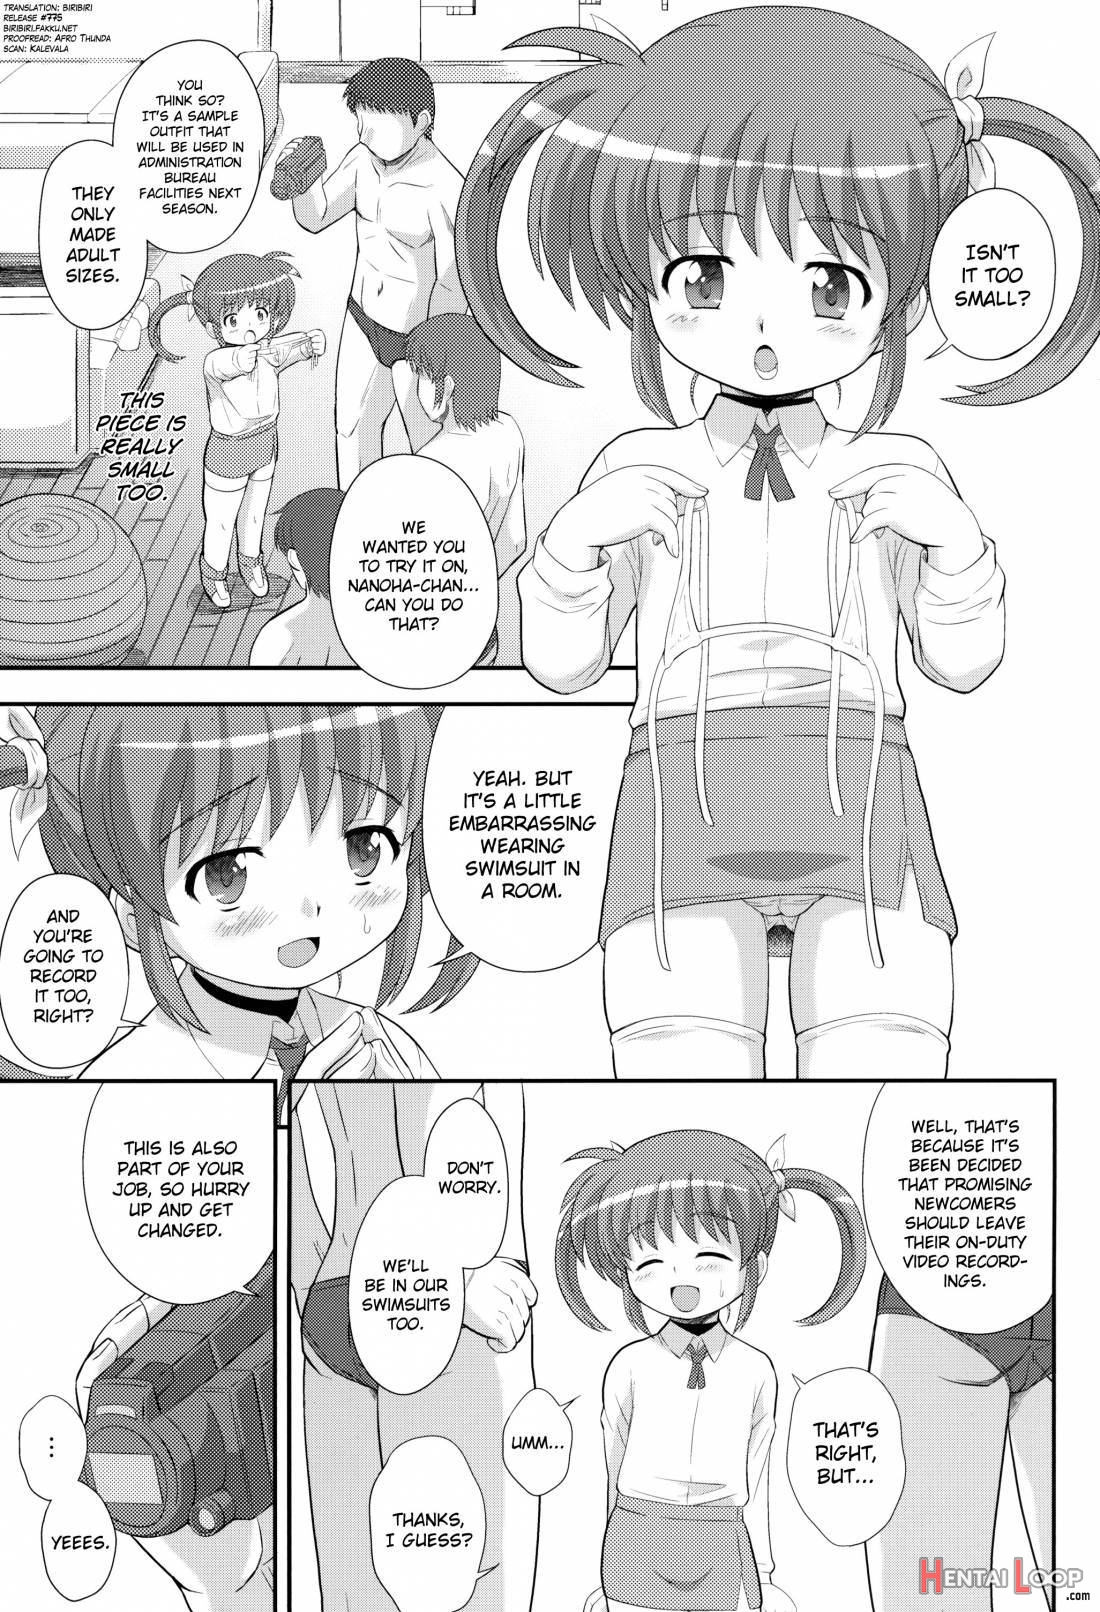 Nanoha-chan U-q page 2